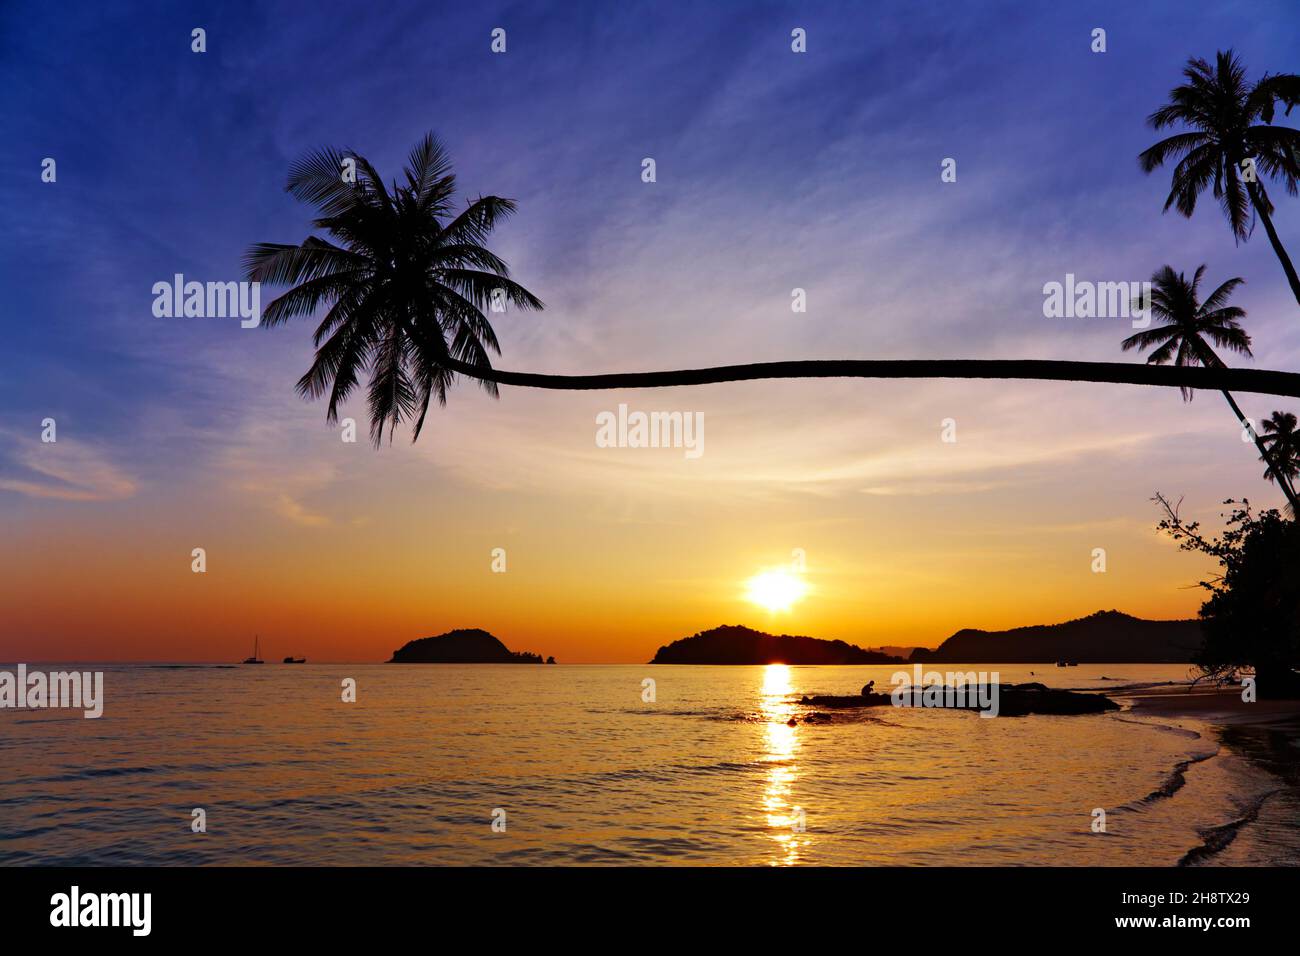 Tropical beach, Mak island, Thailand Stock Photo